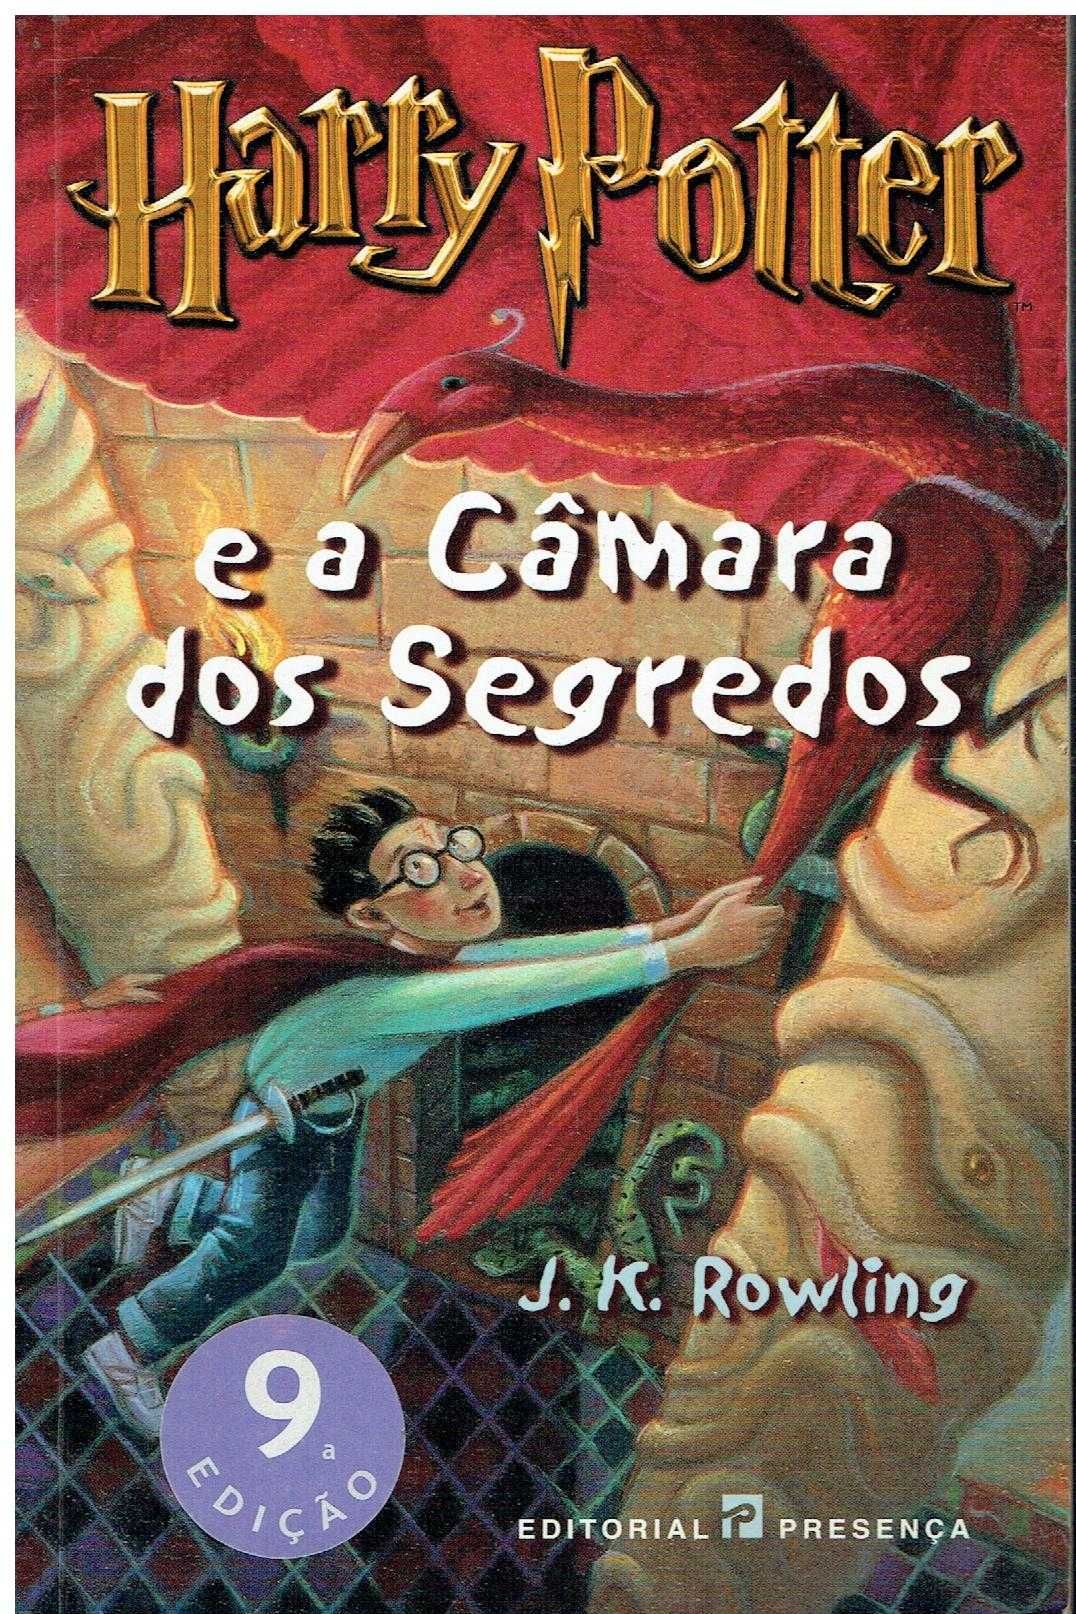 11850

Livros do Harry Potter